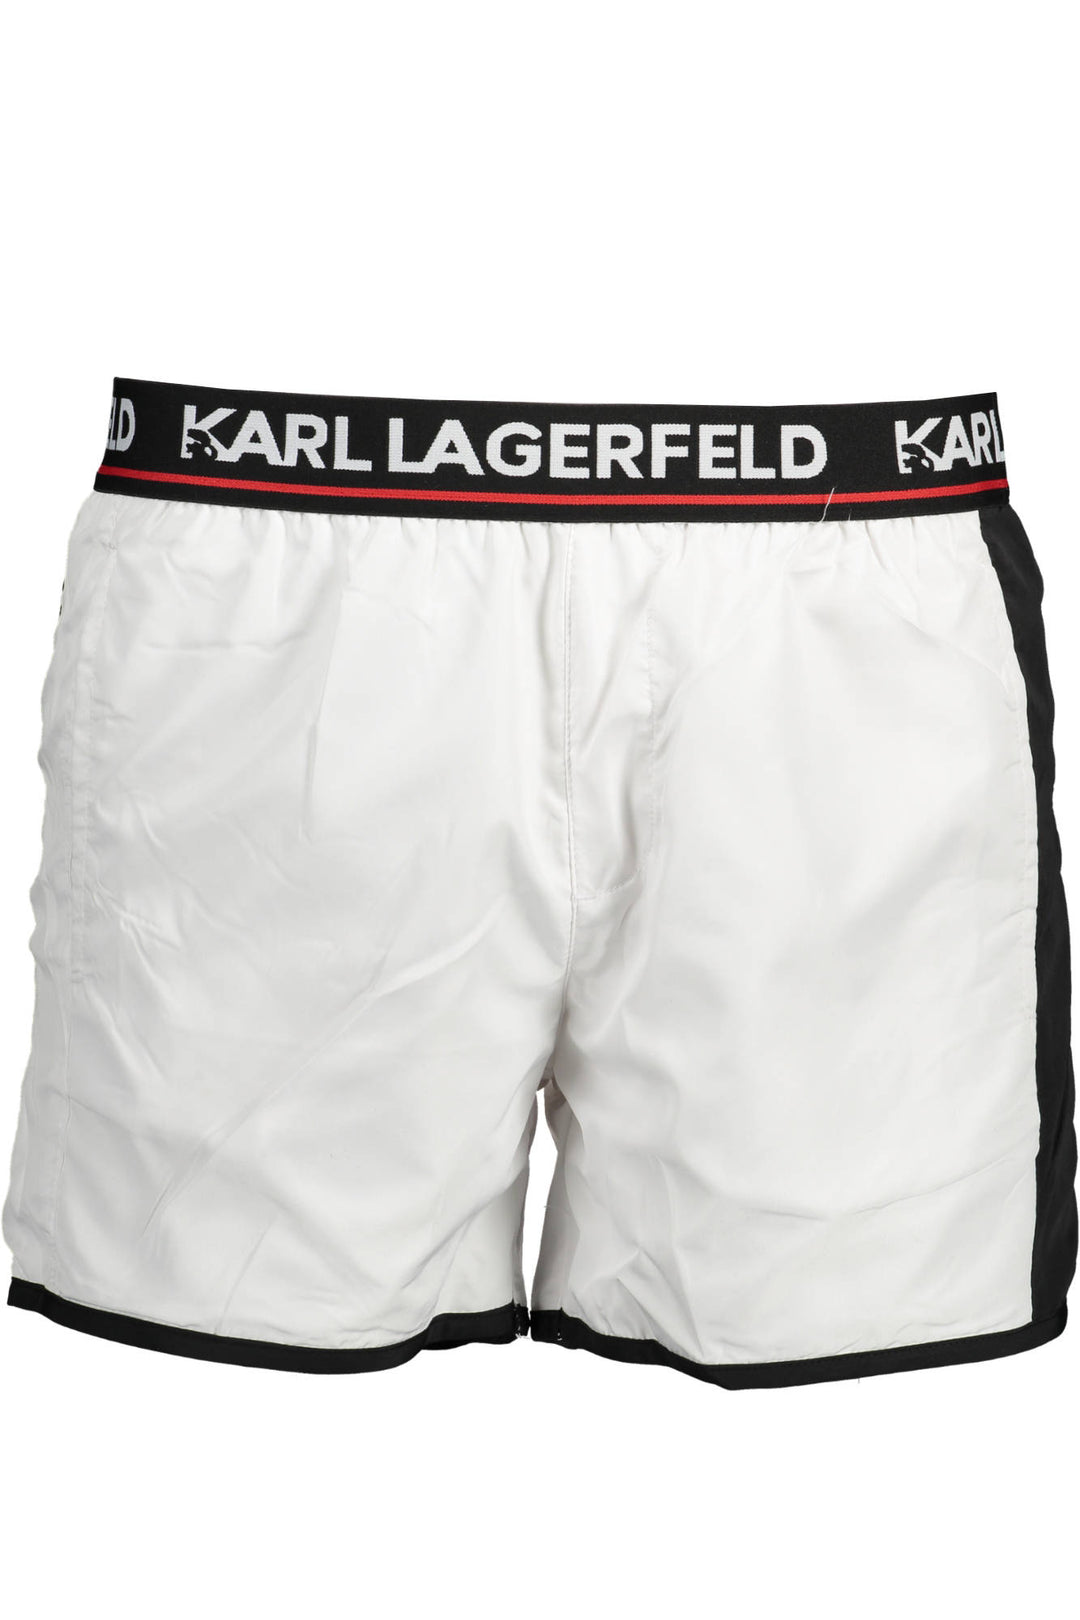 KARL LAGERFELD BEACHWEAR COSTUME PARTS UNDER WHITE MAN